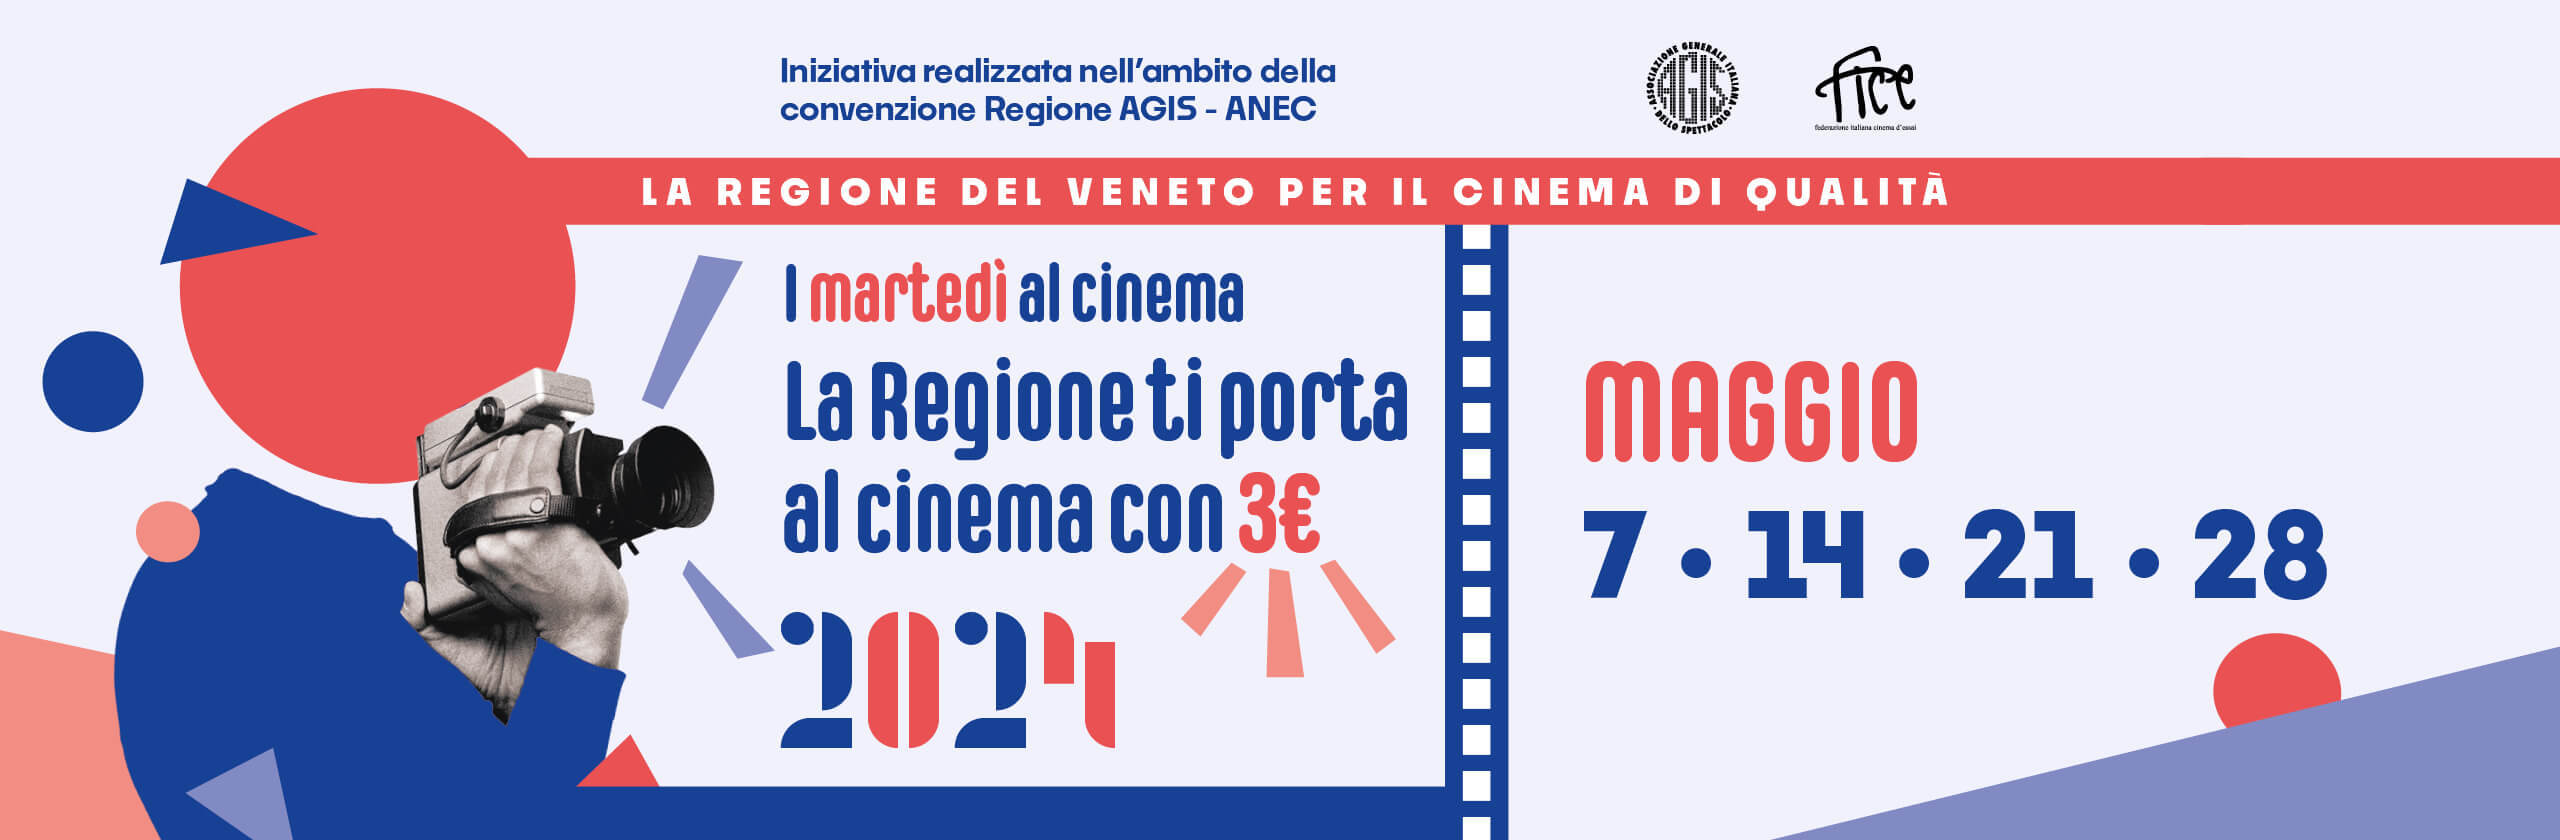 I martedì al Cinema a 3 euro a maggio